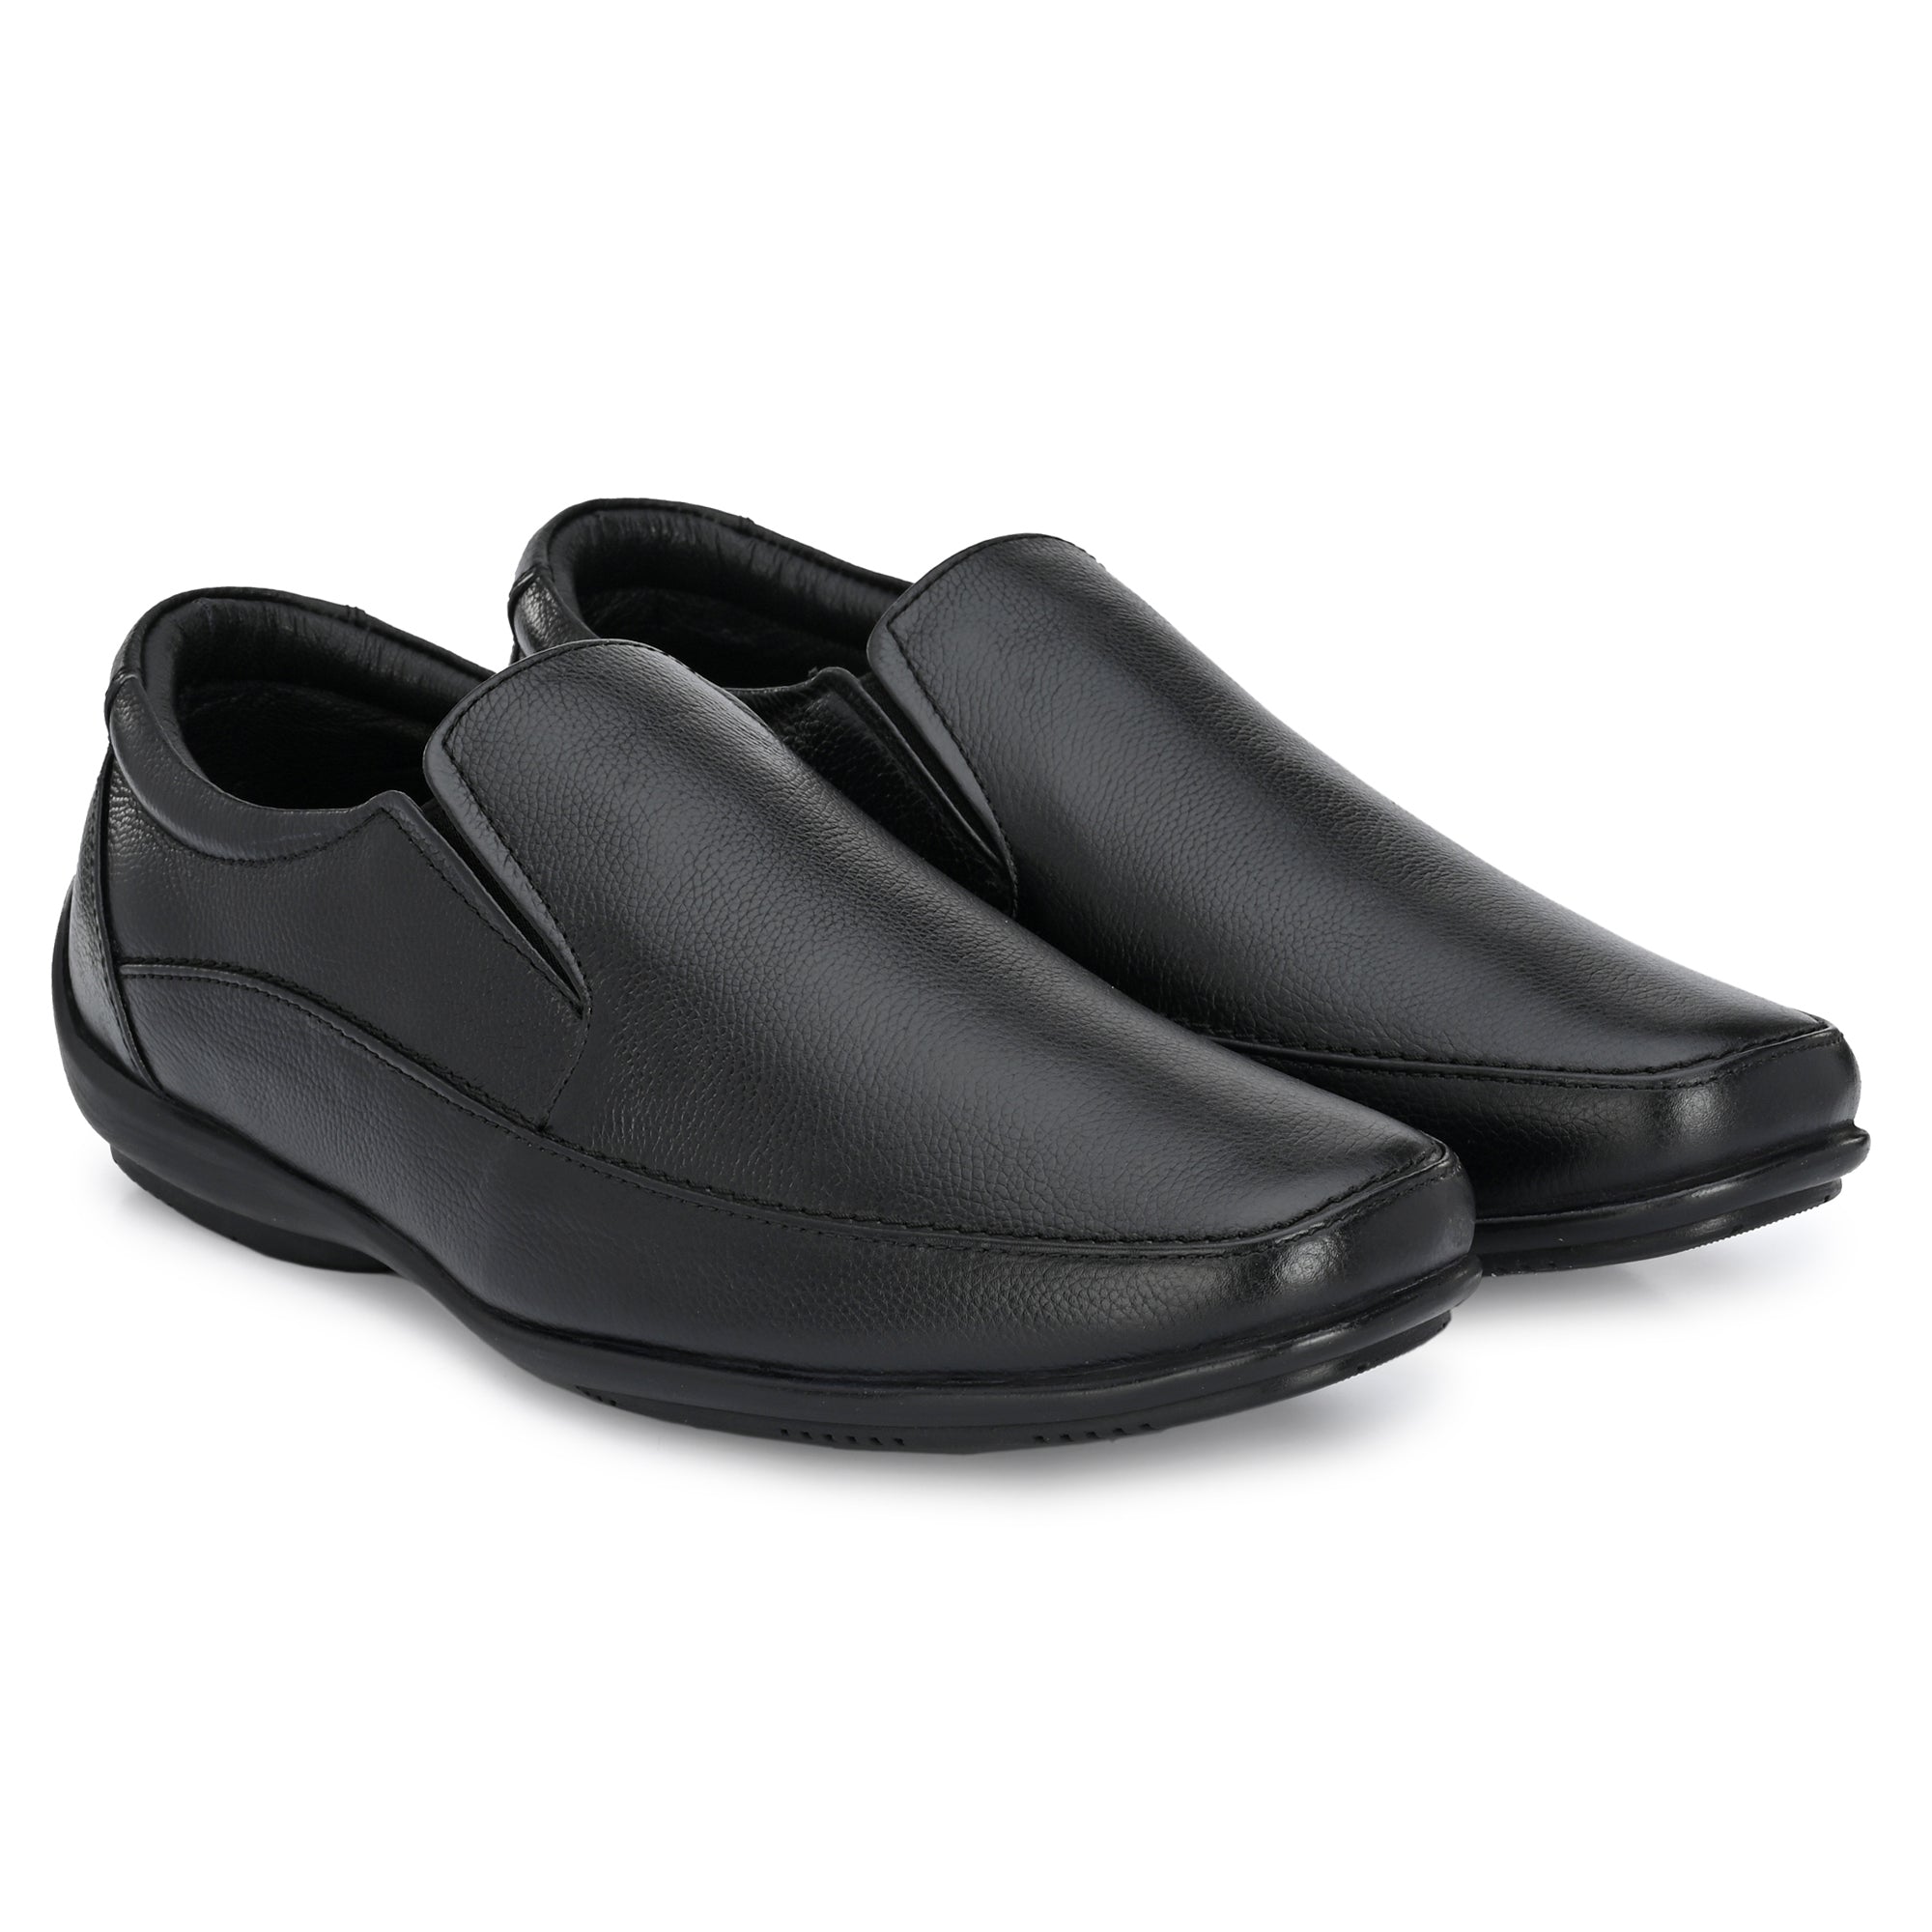 Buy Buckaroo Men Black Casual Moccasin Online | SKU: 62-551331-11-40 –  Mochi Shoes